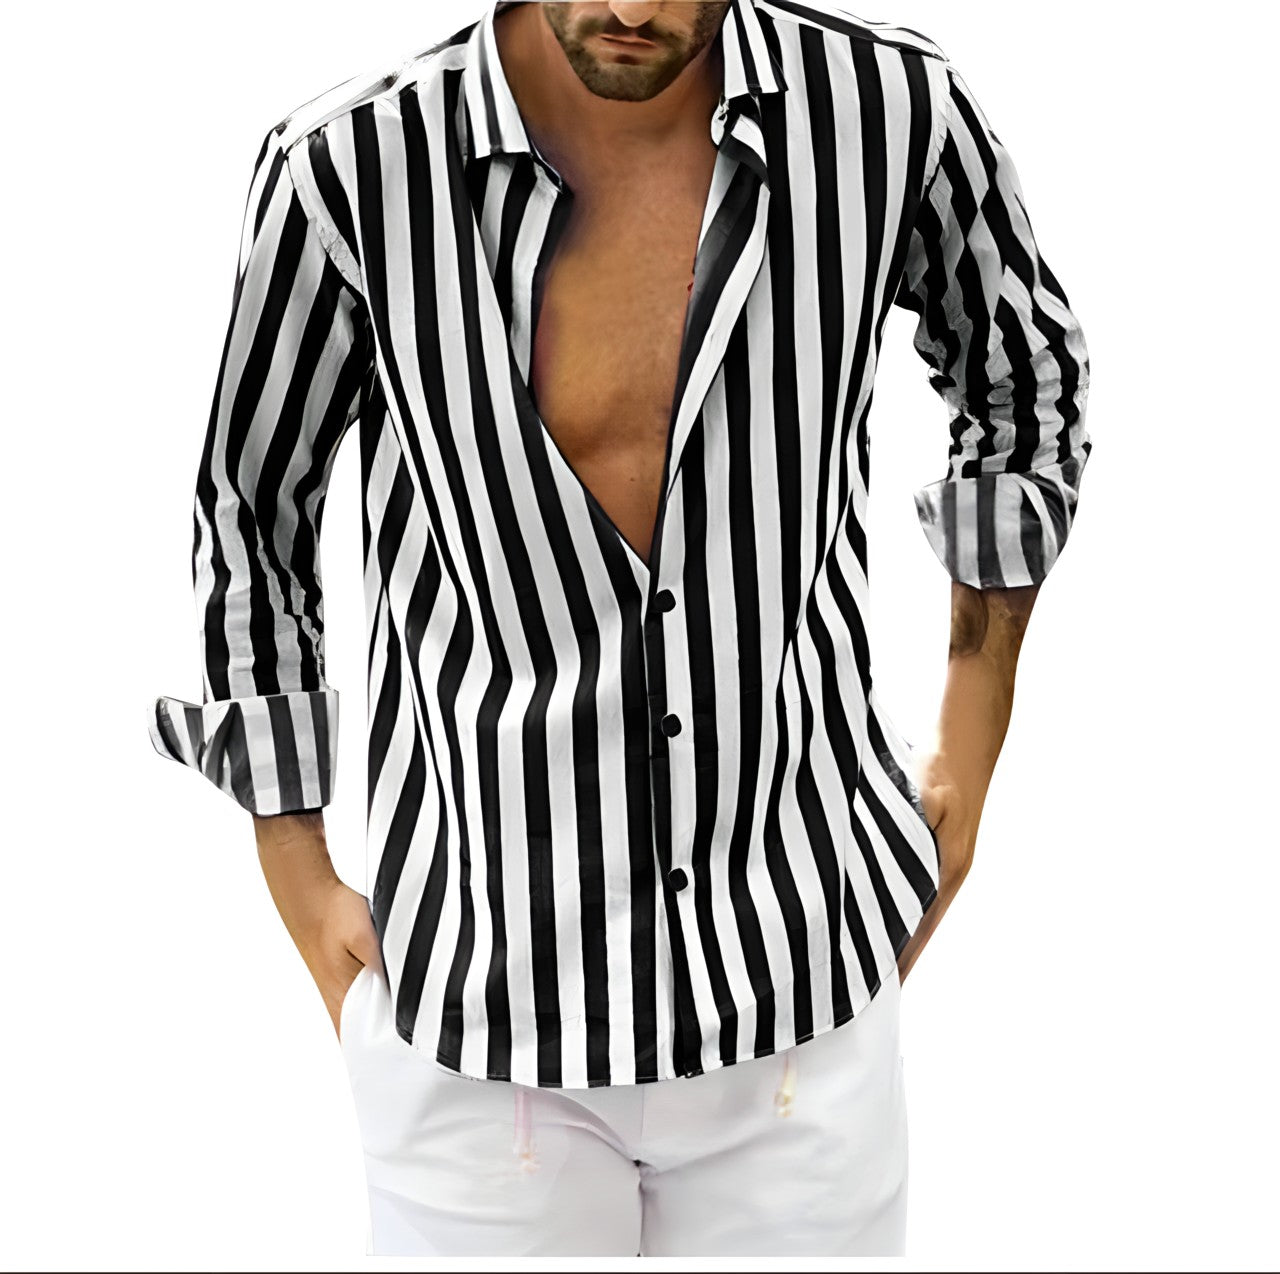 Maverick | Men's Striped Shirt